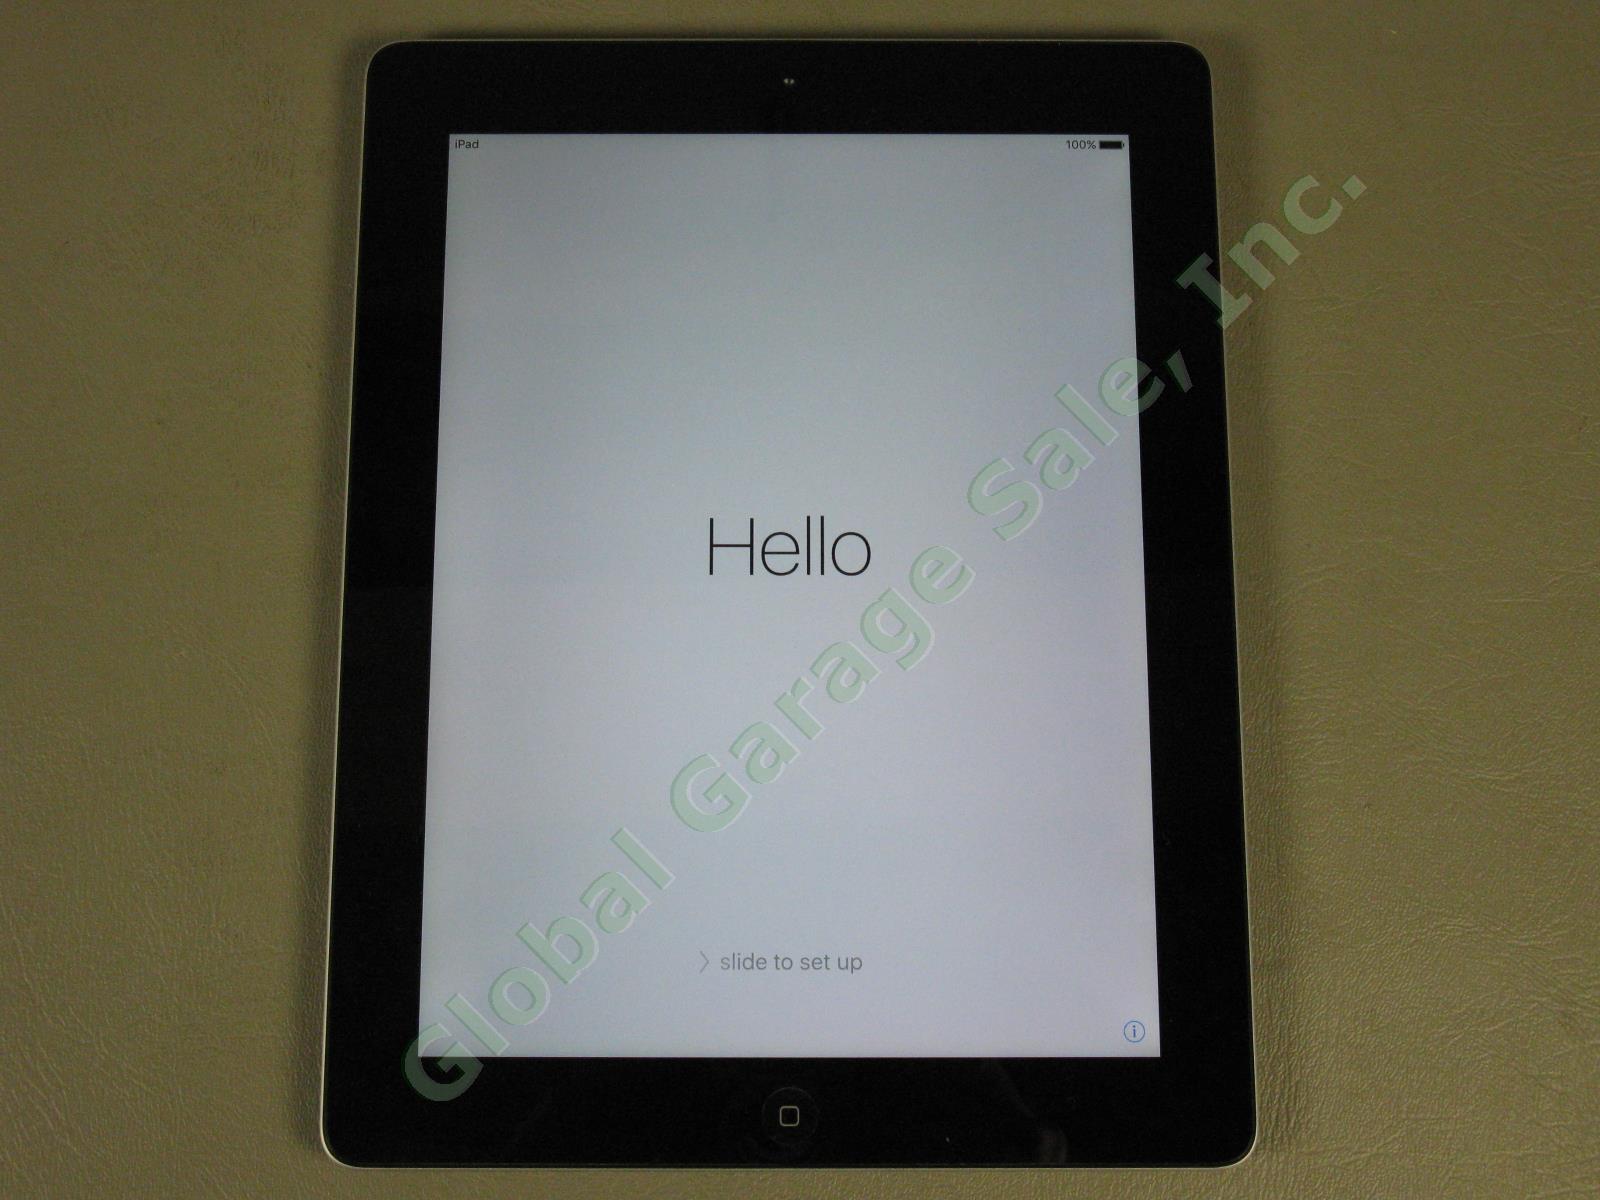 Apple iPad 3 3rd Generation A1416 16GB Wi-Fi MC705LL/A Black Works Great NR!